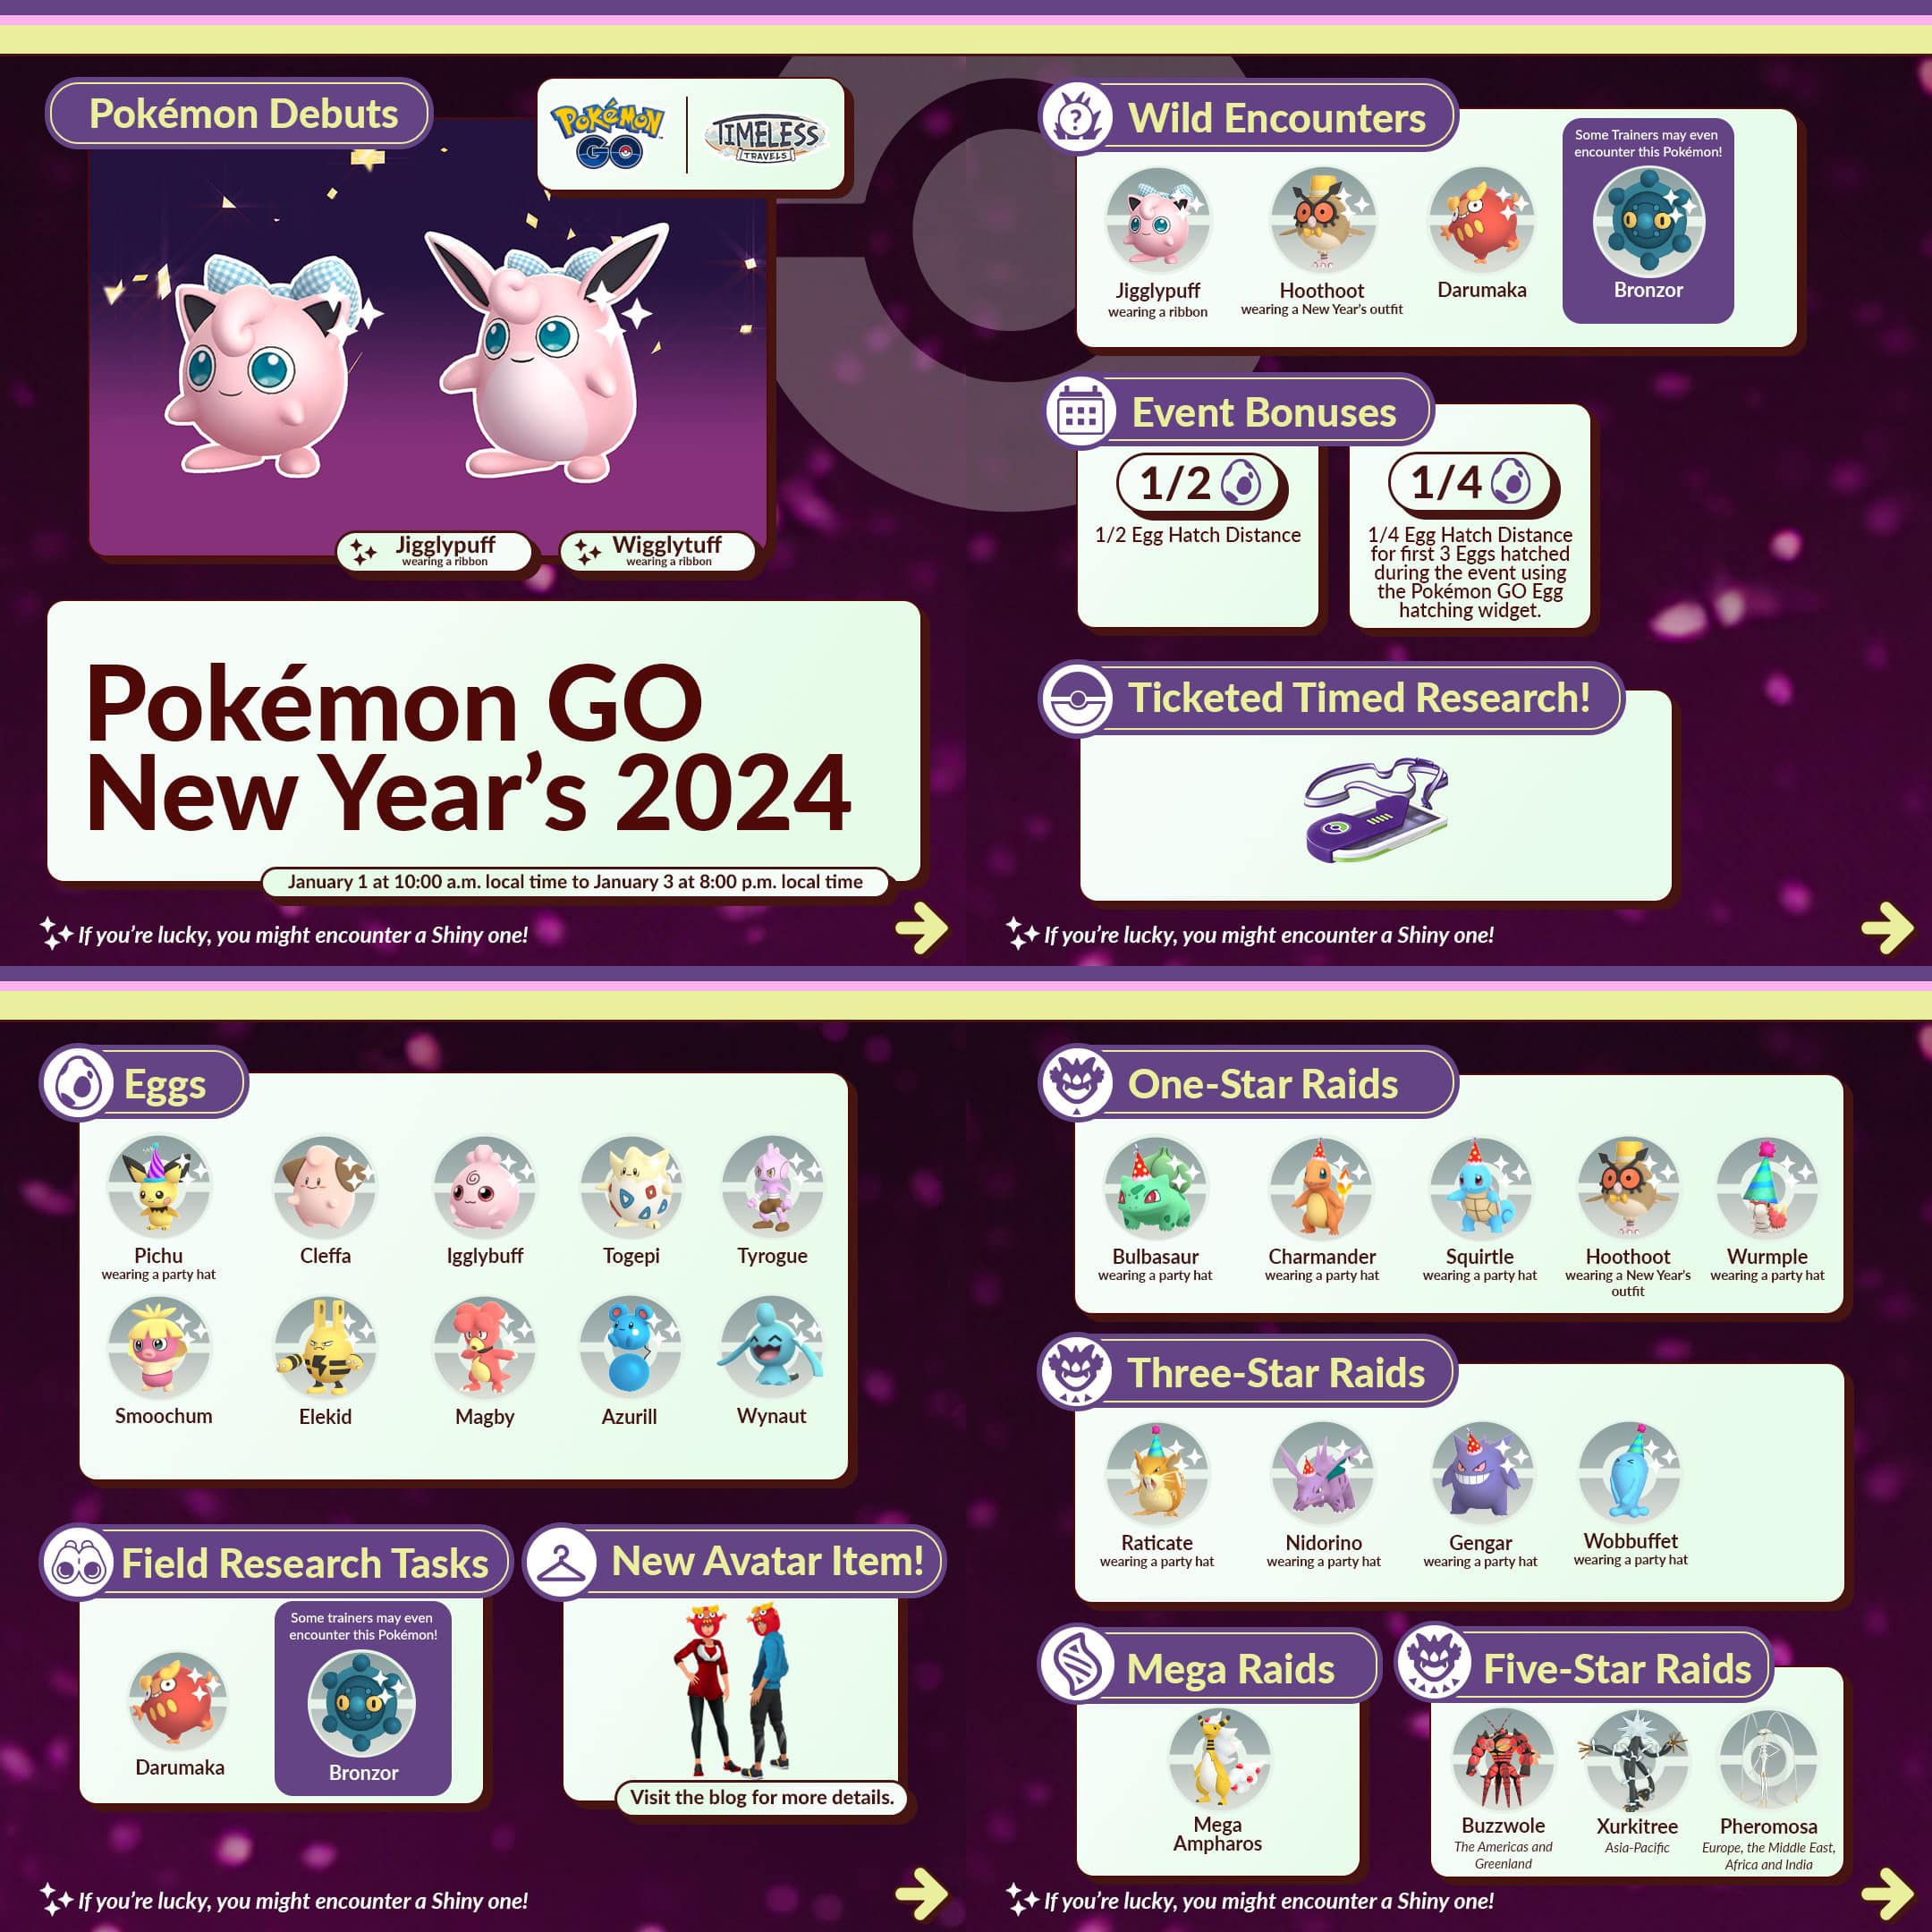 Pokémon Go New Year's 2024 Event Explained